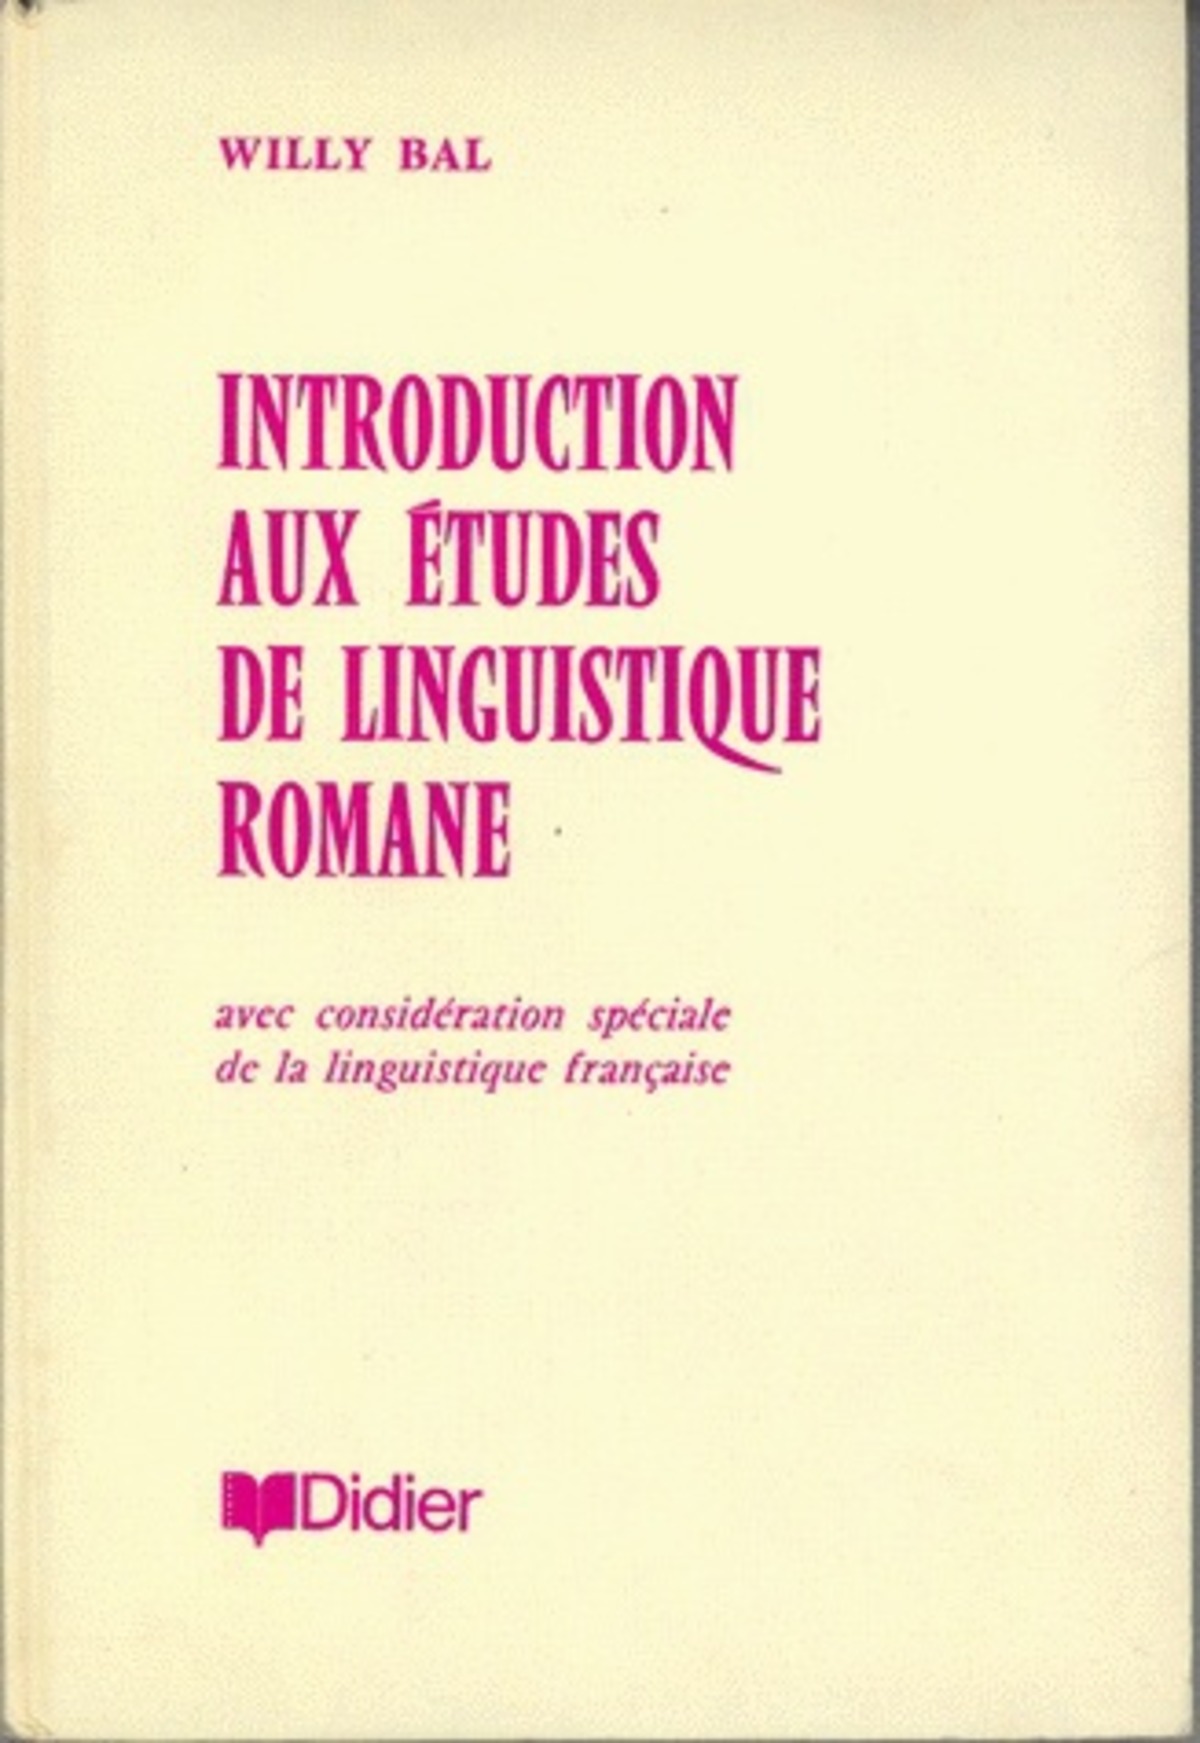 Introduction aux études de linguistique romane